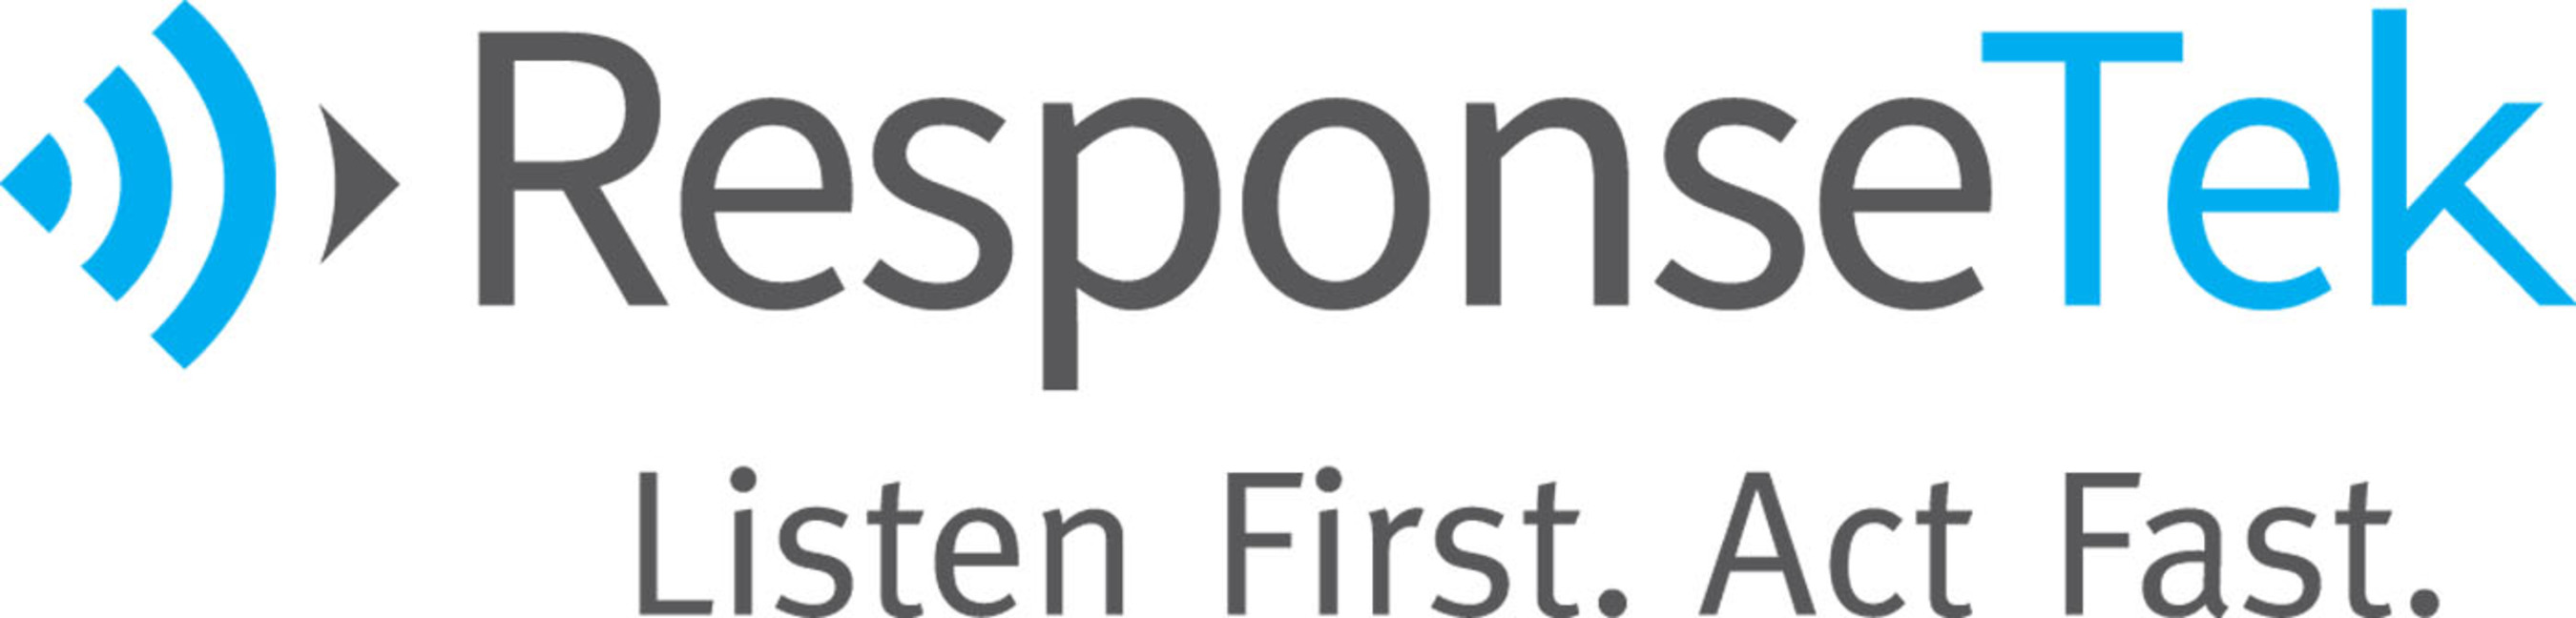 ResponseTek Logo.